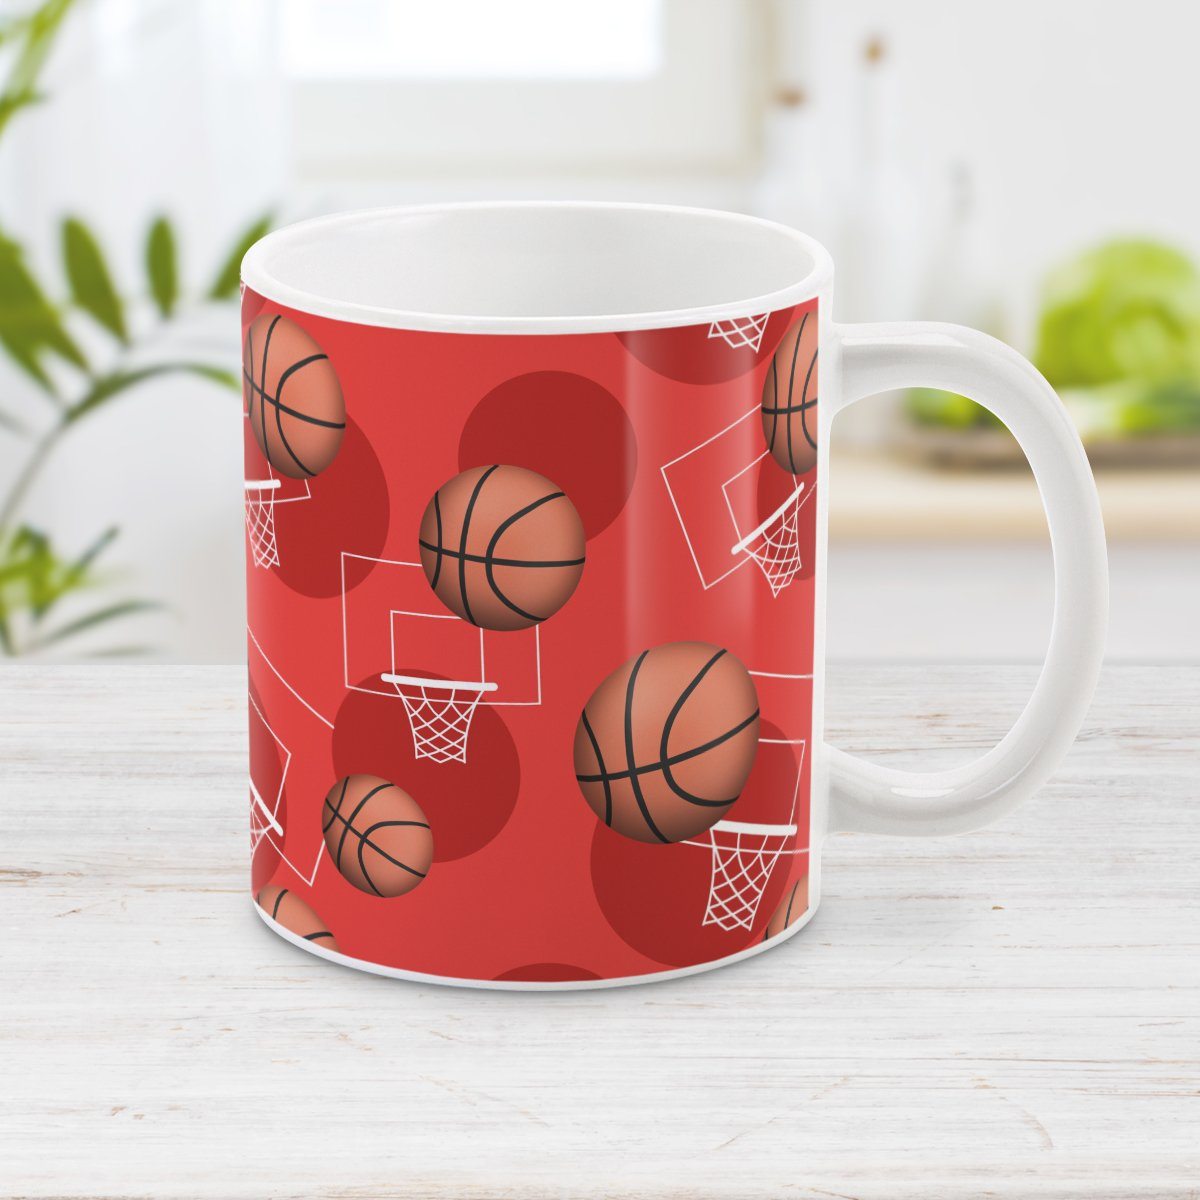 Red Basketball Mug - Basketball Themed Pattern Red Basketball Mug at Amy's Coffee Mugs